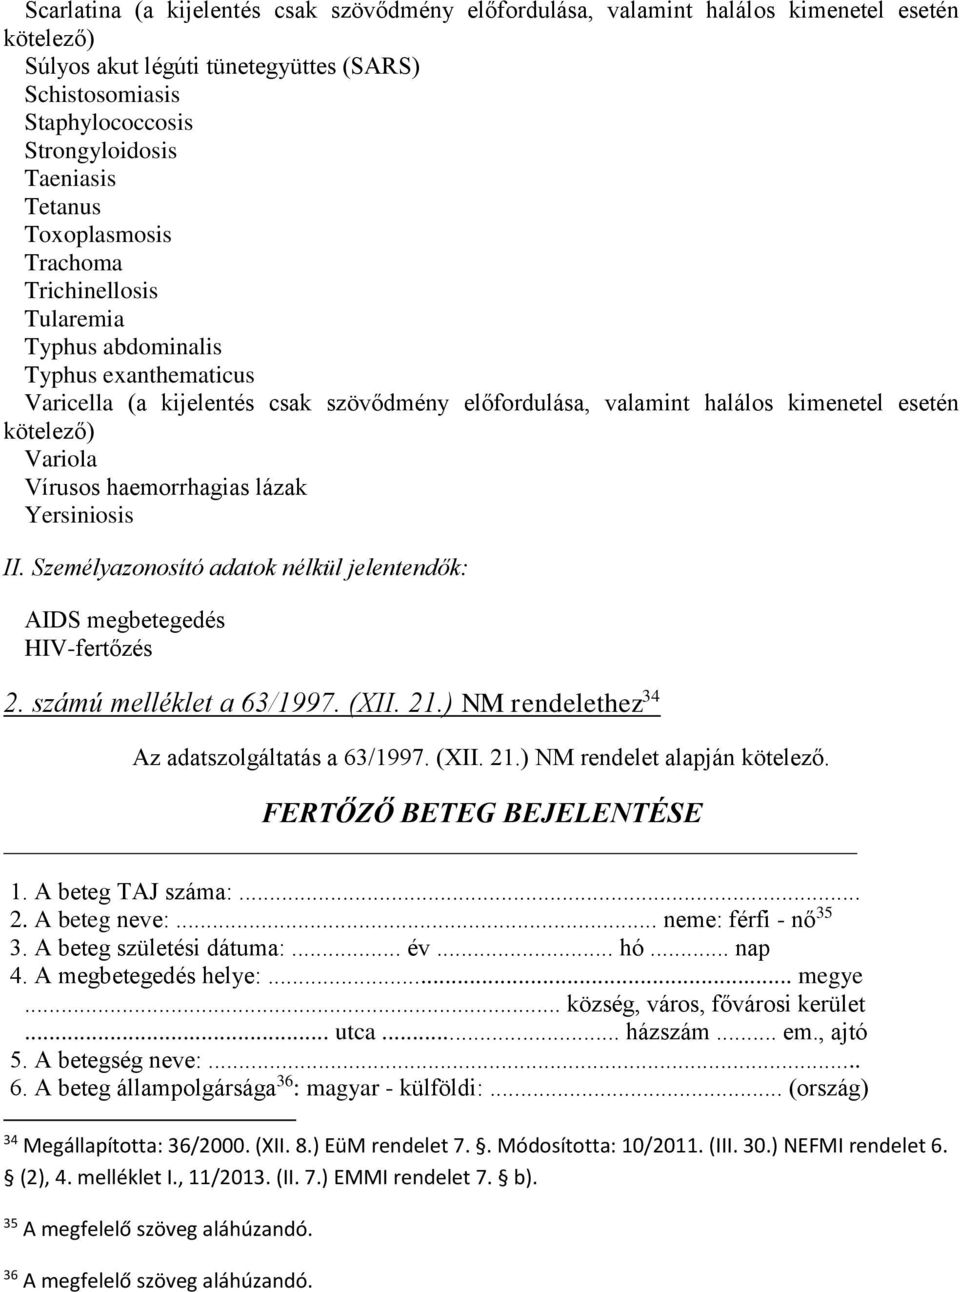 Variola Vírusos haemorrhagias lázak Yersiniosis II. Személyazonosító adatok nélkül jelentendők: AIDS megbetegedés HIV-fertőzés 2. számú melléklet a 63/1997. (XII. 21.